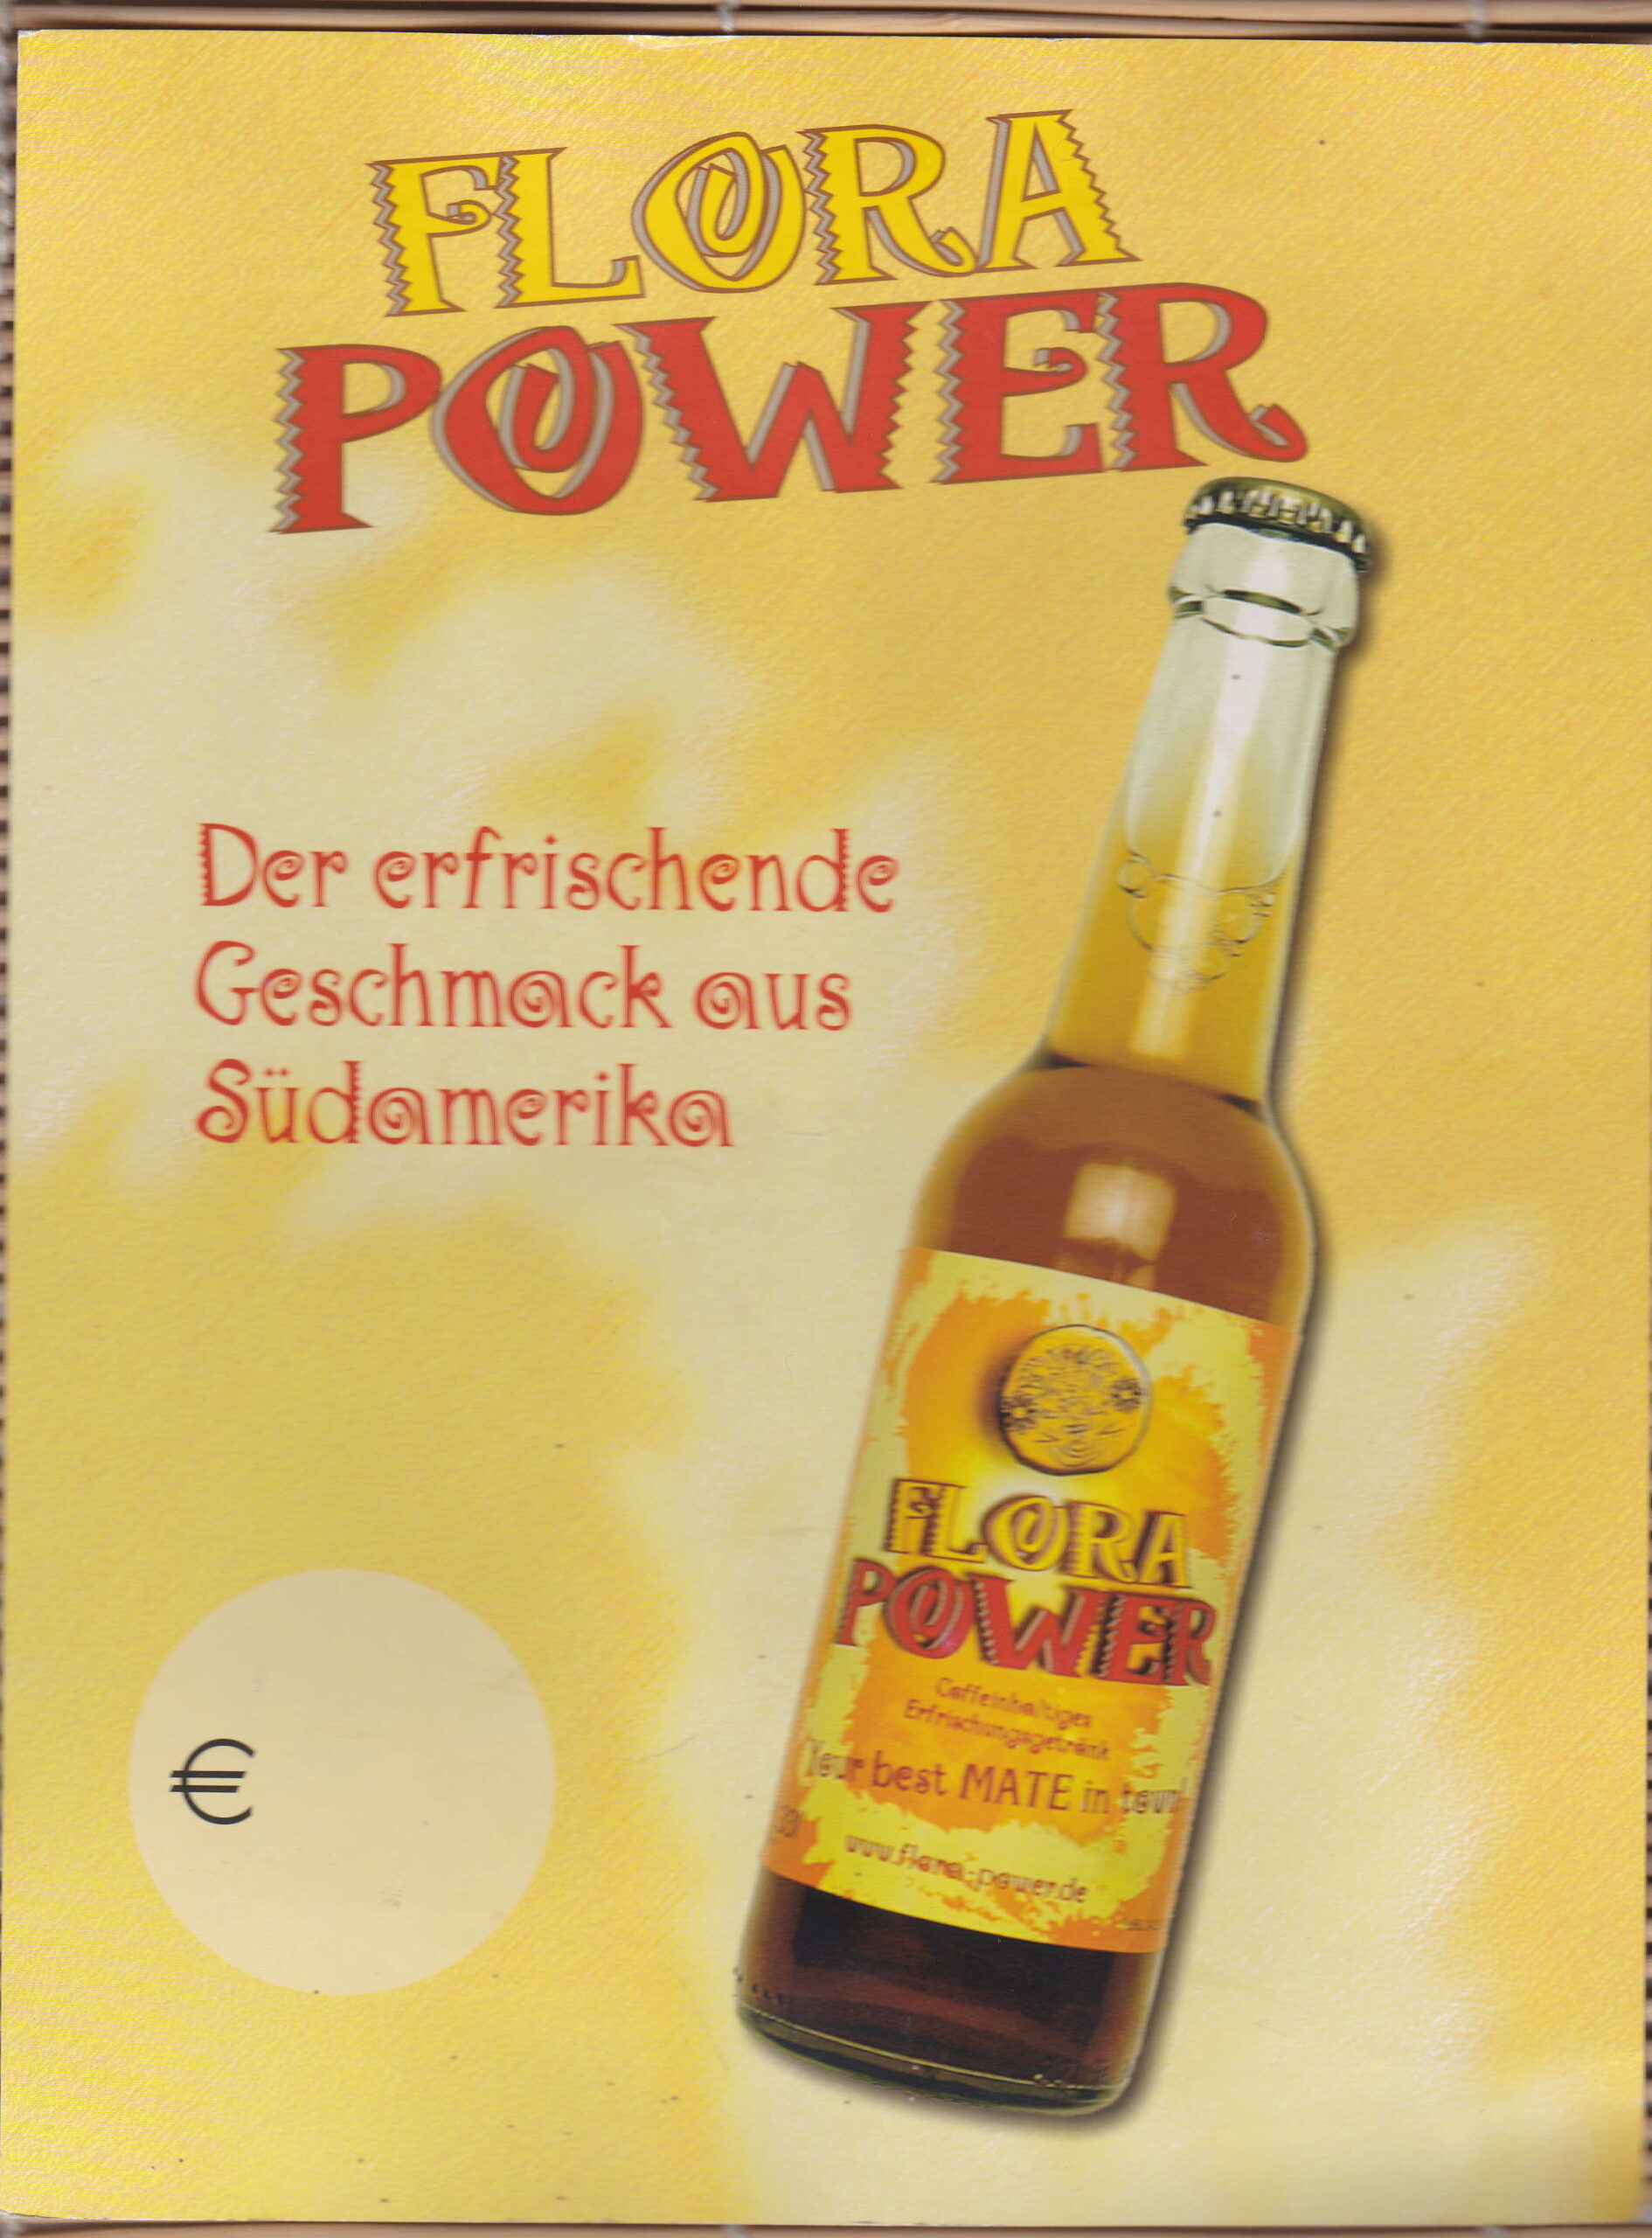 Abbildung 14: Flora Power-Werbung der frühen Jahre